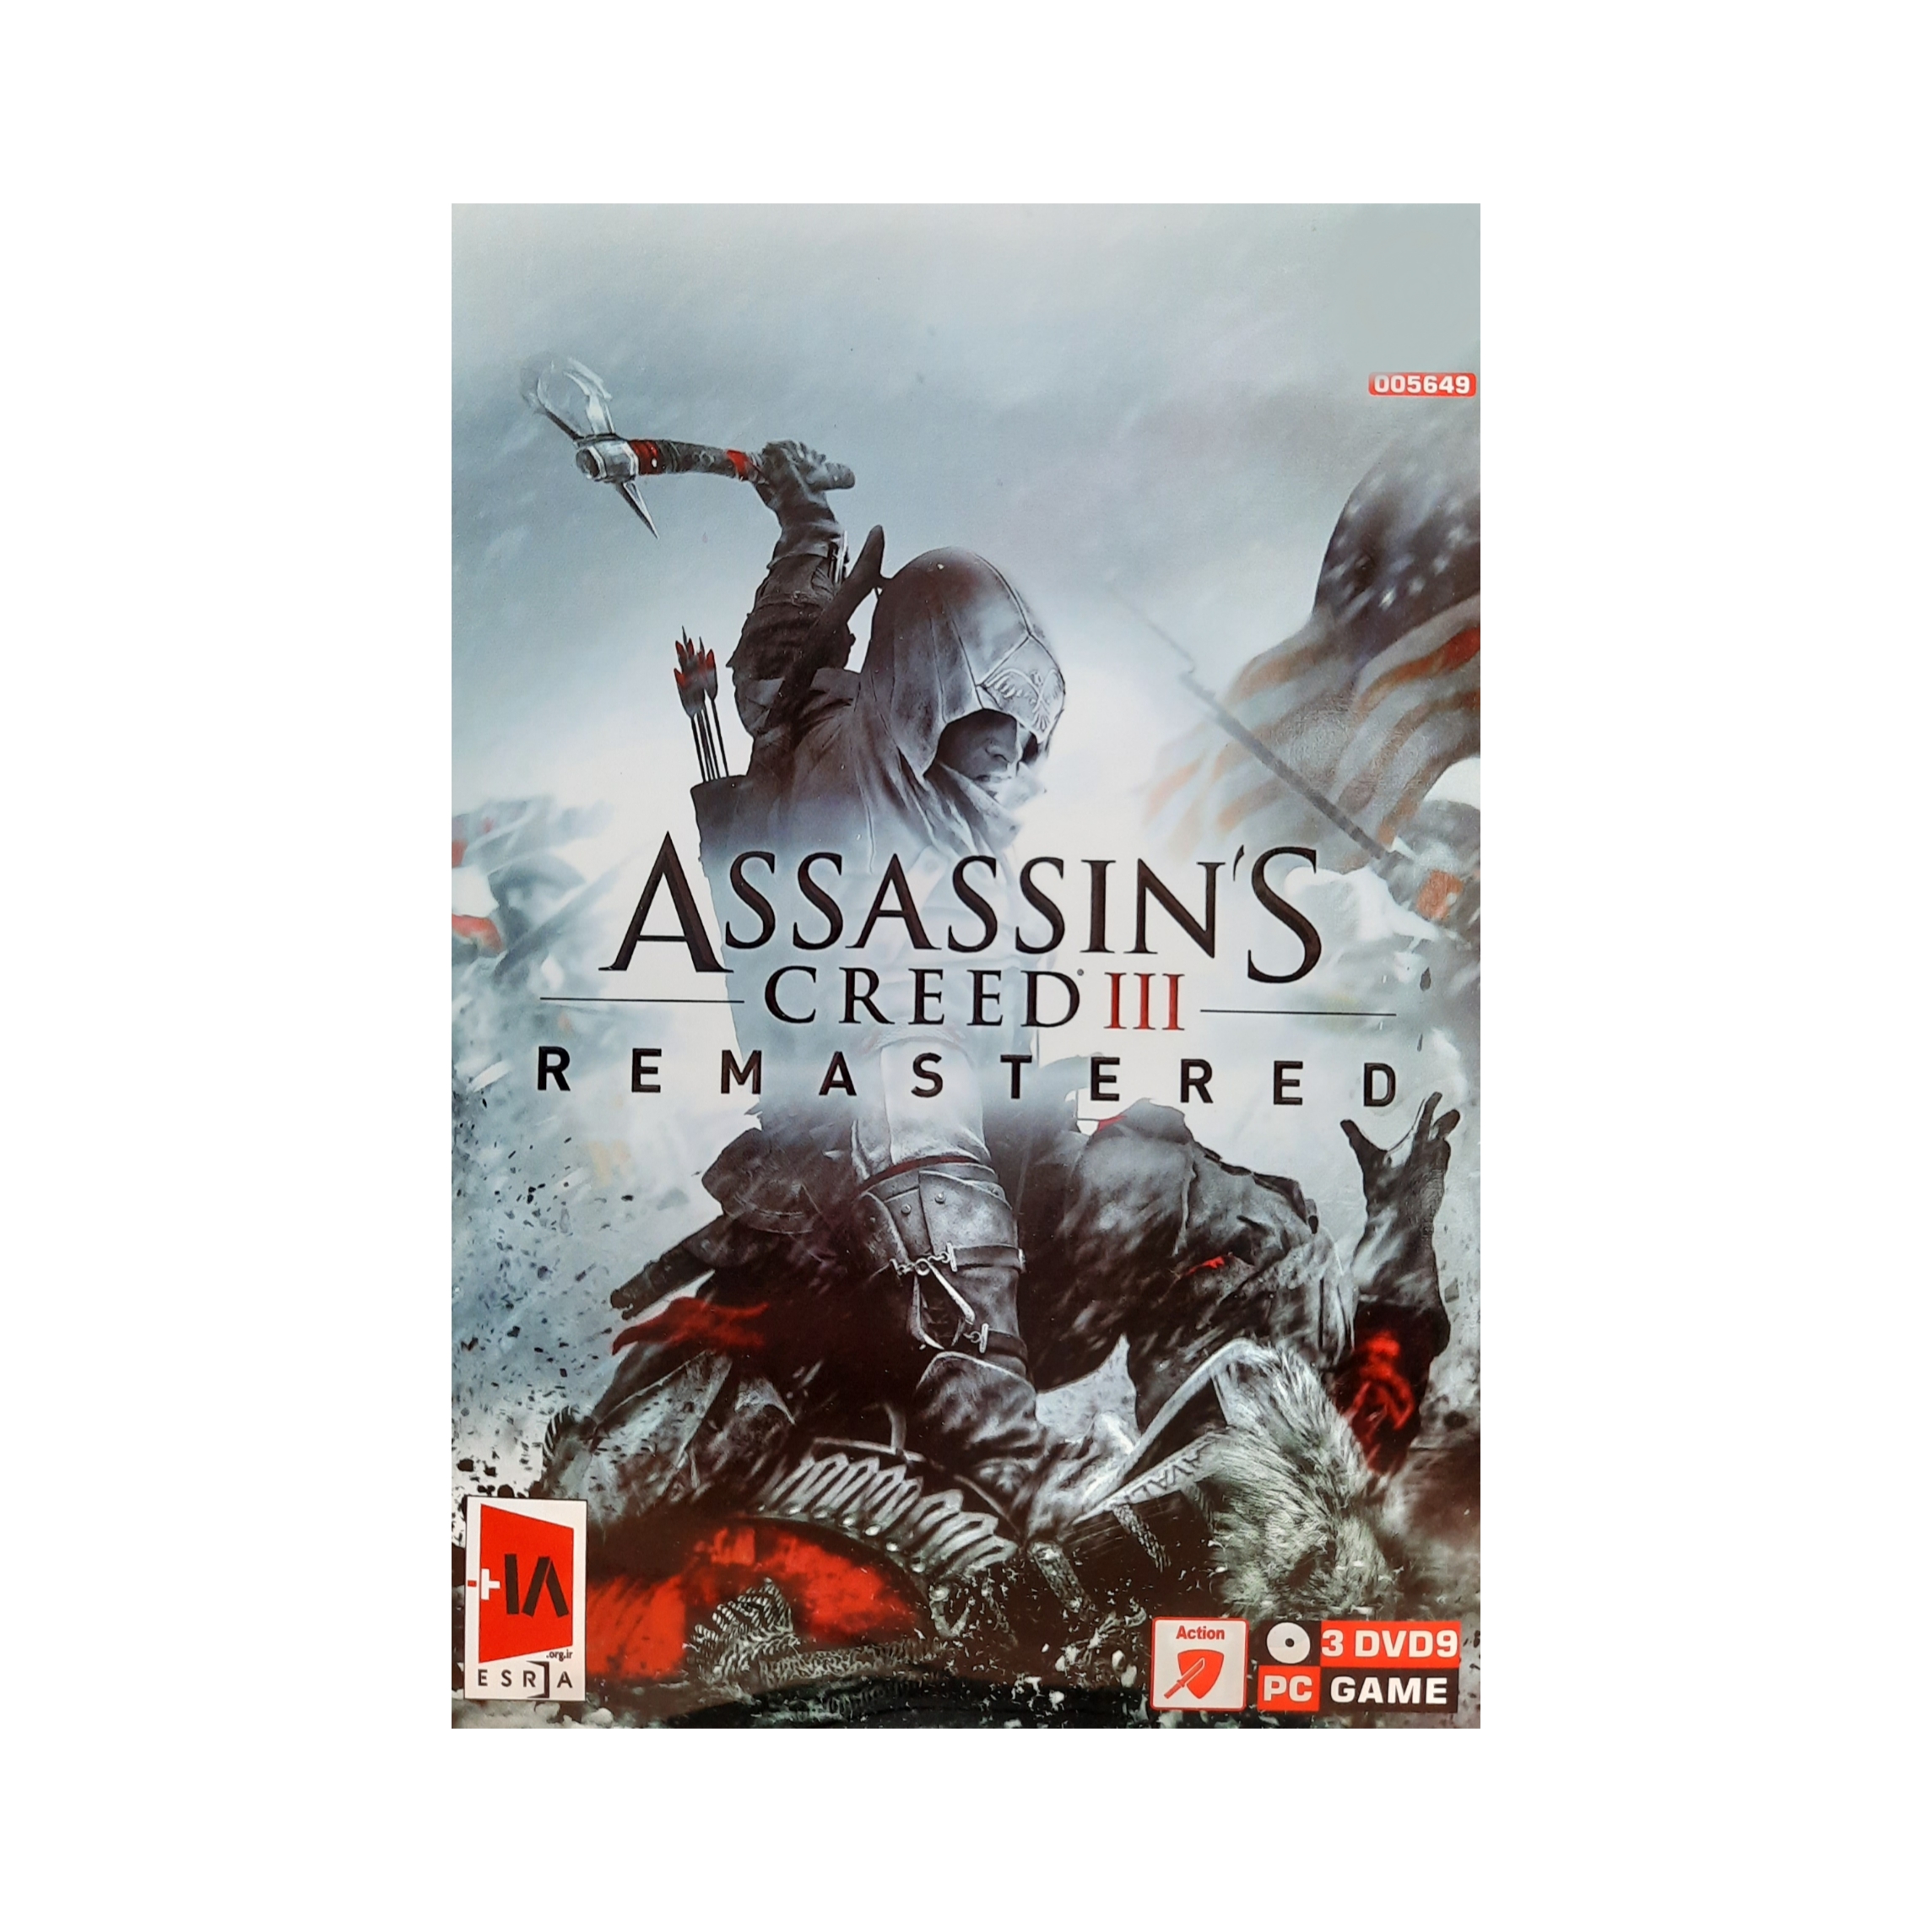 بازی Assassins creed III remastered مخصوص pc